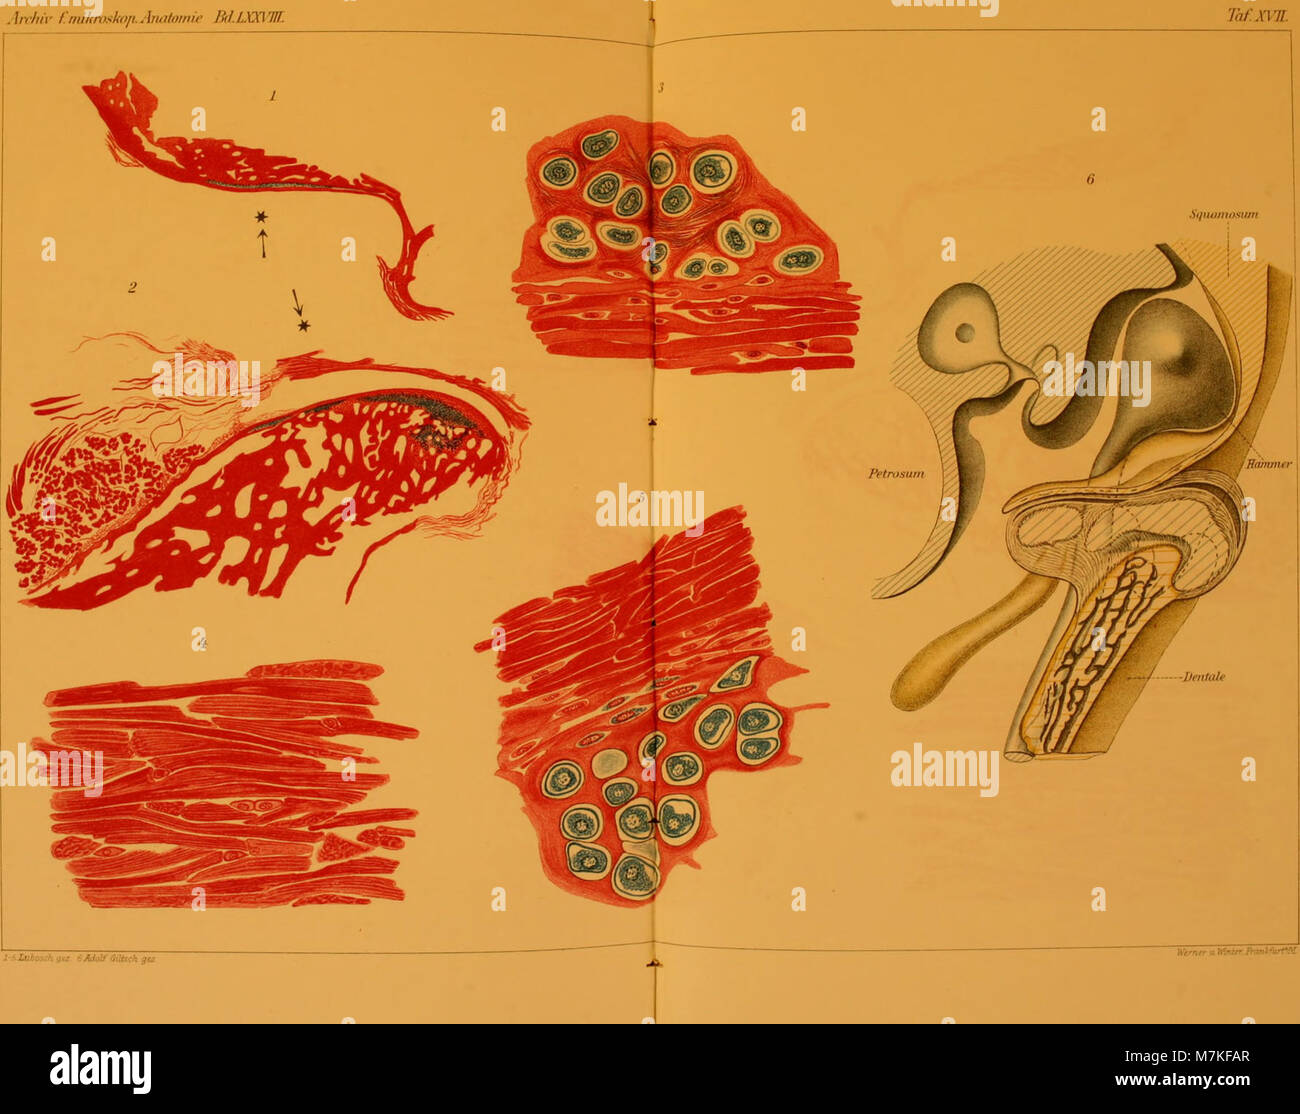 Archiv für mikroskopische Anatomie (1911) (20141919320) Foto de stock